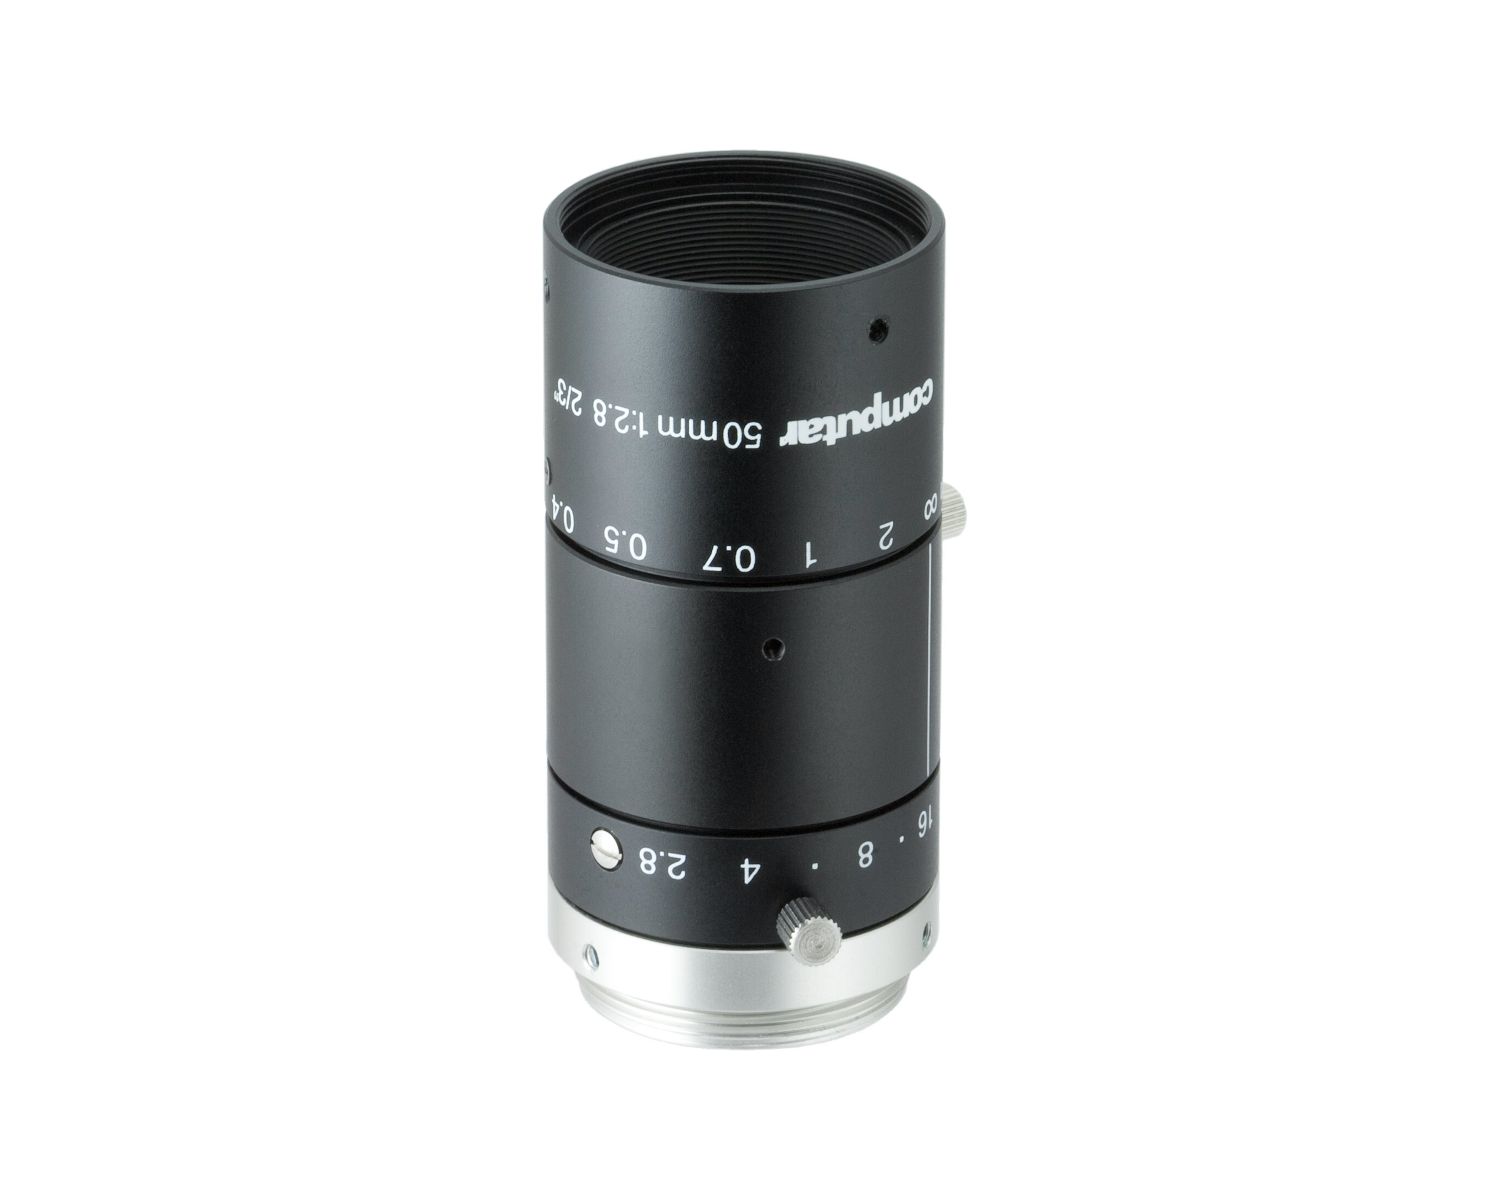 Ống kính - Lens camera Computar M5028-MPW3